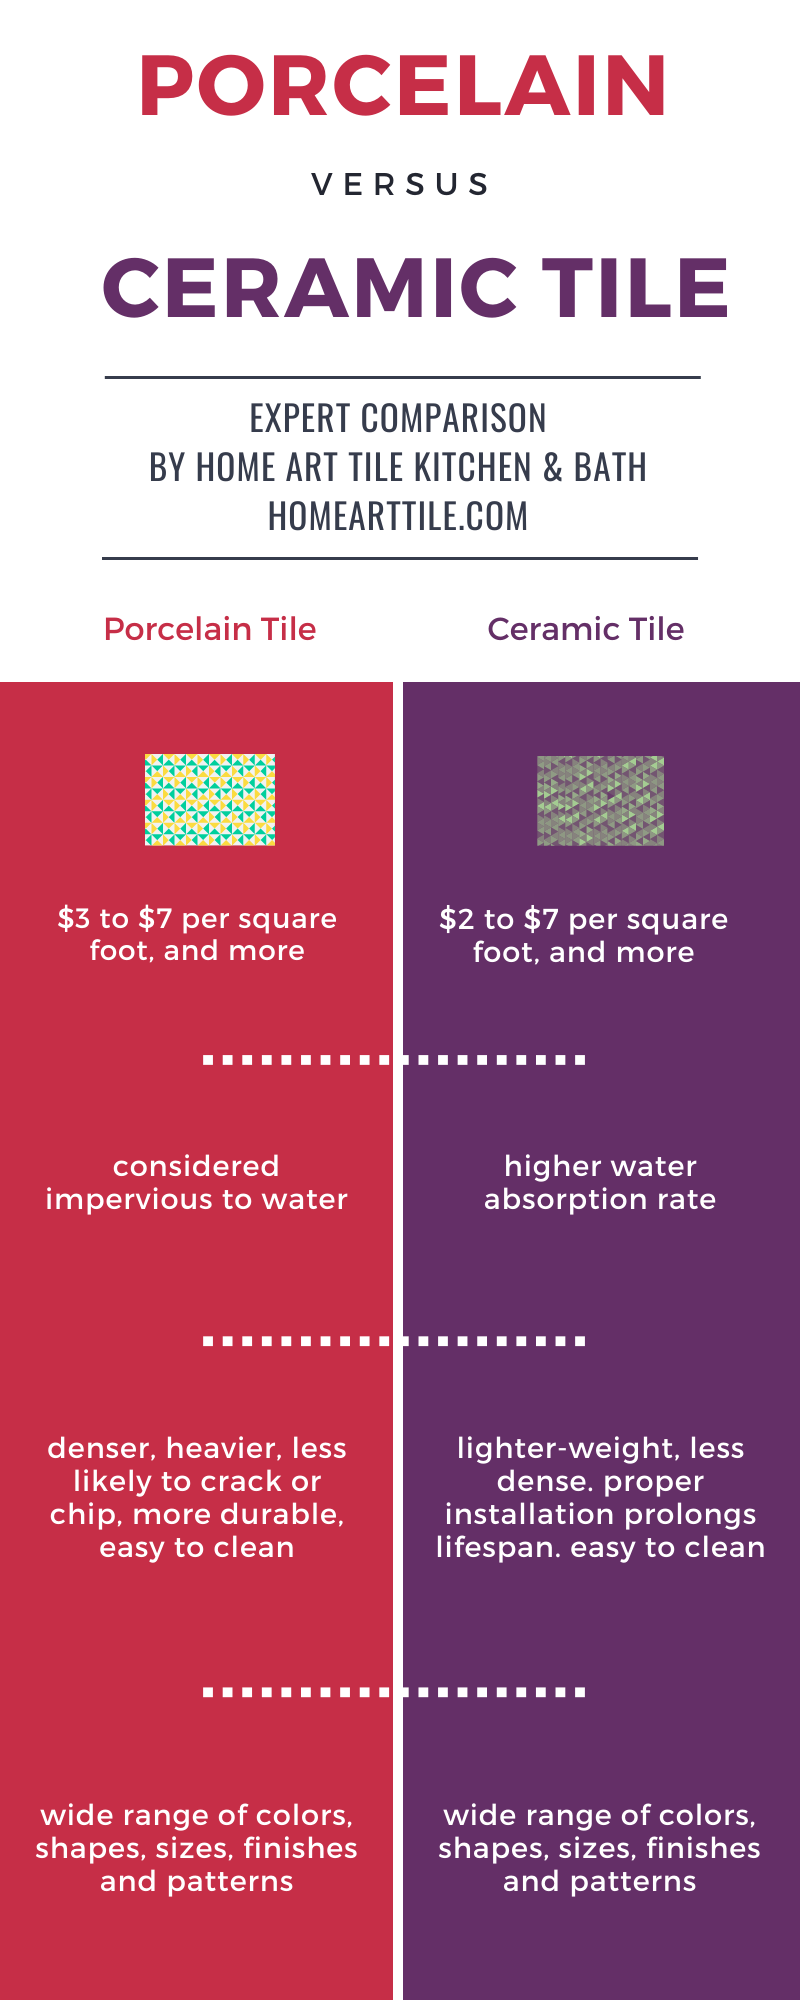 Porcelain or Ceramic Tile: Best Kitchen Backsplash Materials Explained | Home Art Tile Kitchen and Bath